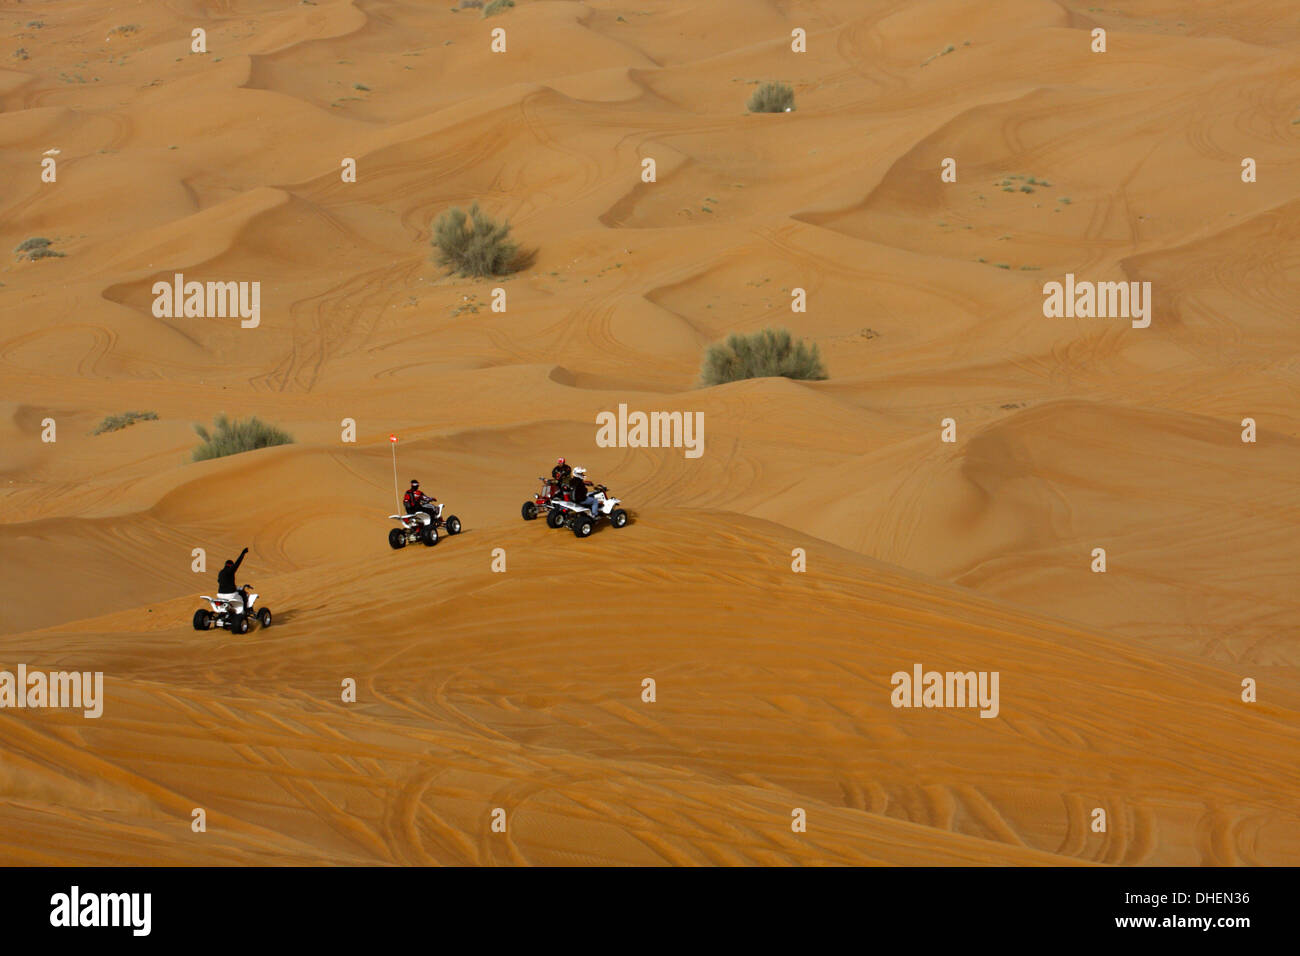 Safari dans le désert, Dubaï, Émirats arabes unis, Moyen Orient Banque D'Images